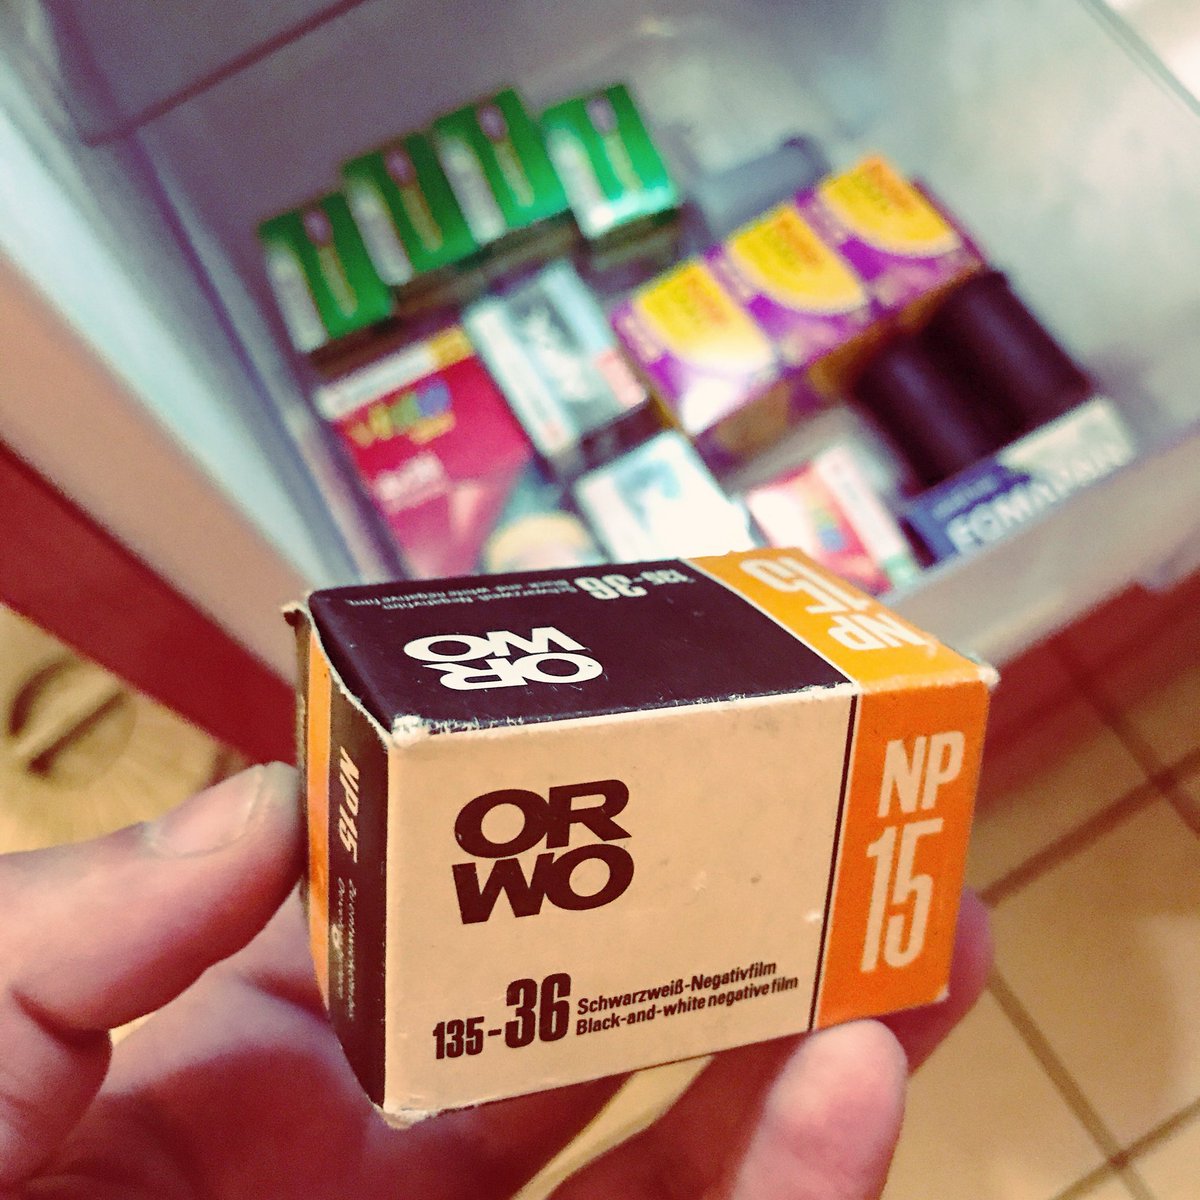 Neuster Flohmarkt-Fund, ein ungeöffneter ORWO NP15 schwarz-weiß KB-Film, abgelaufen 07/1991 - bin gespannt, was dabei raus kommt 😄
Ja, mein Kühlschrank ist voller Filmmaterial 😂 #orwo #originalwolfen #analogphotography